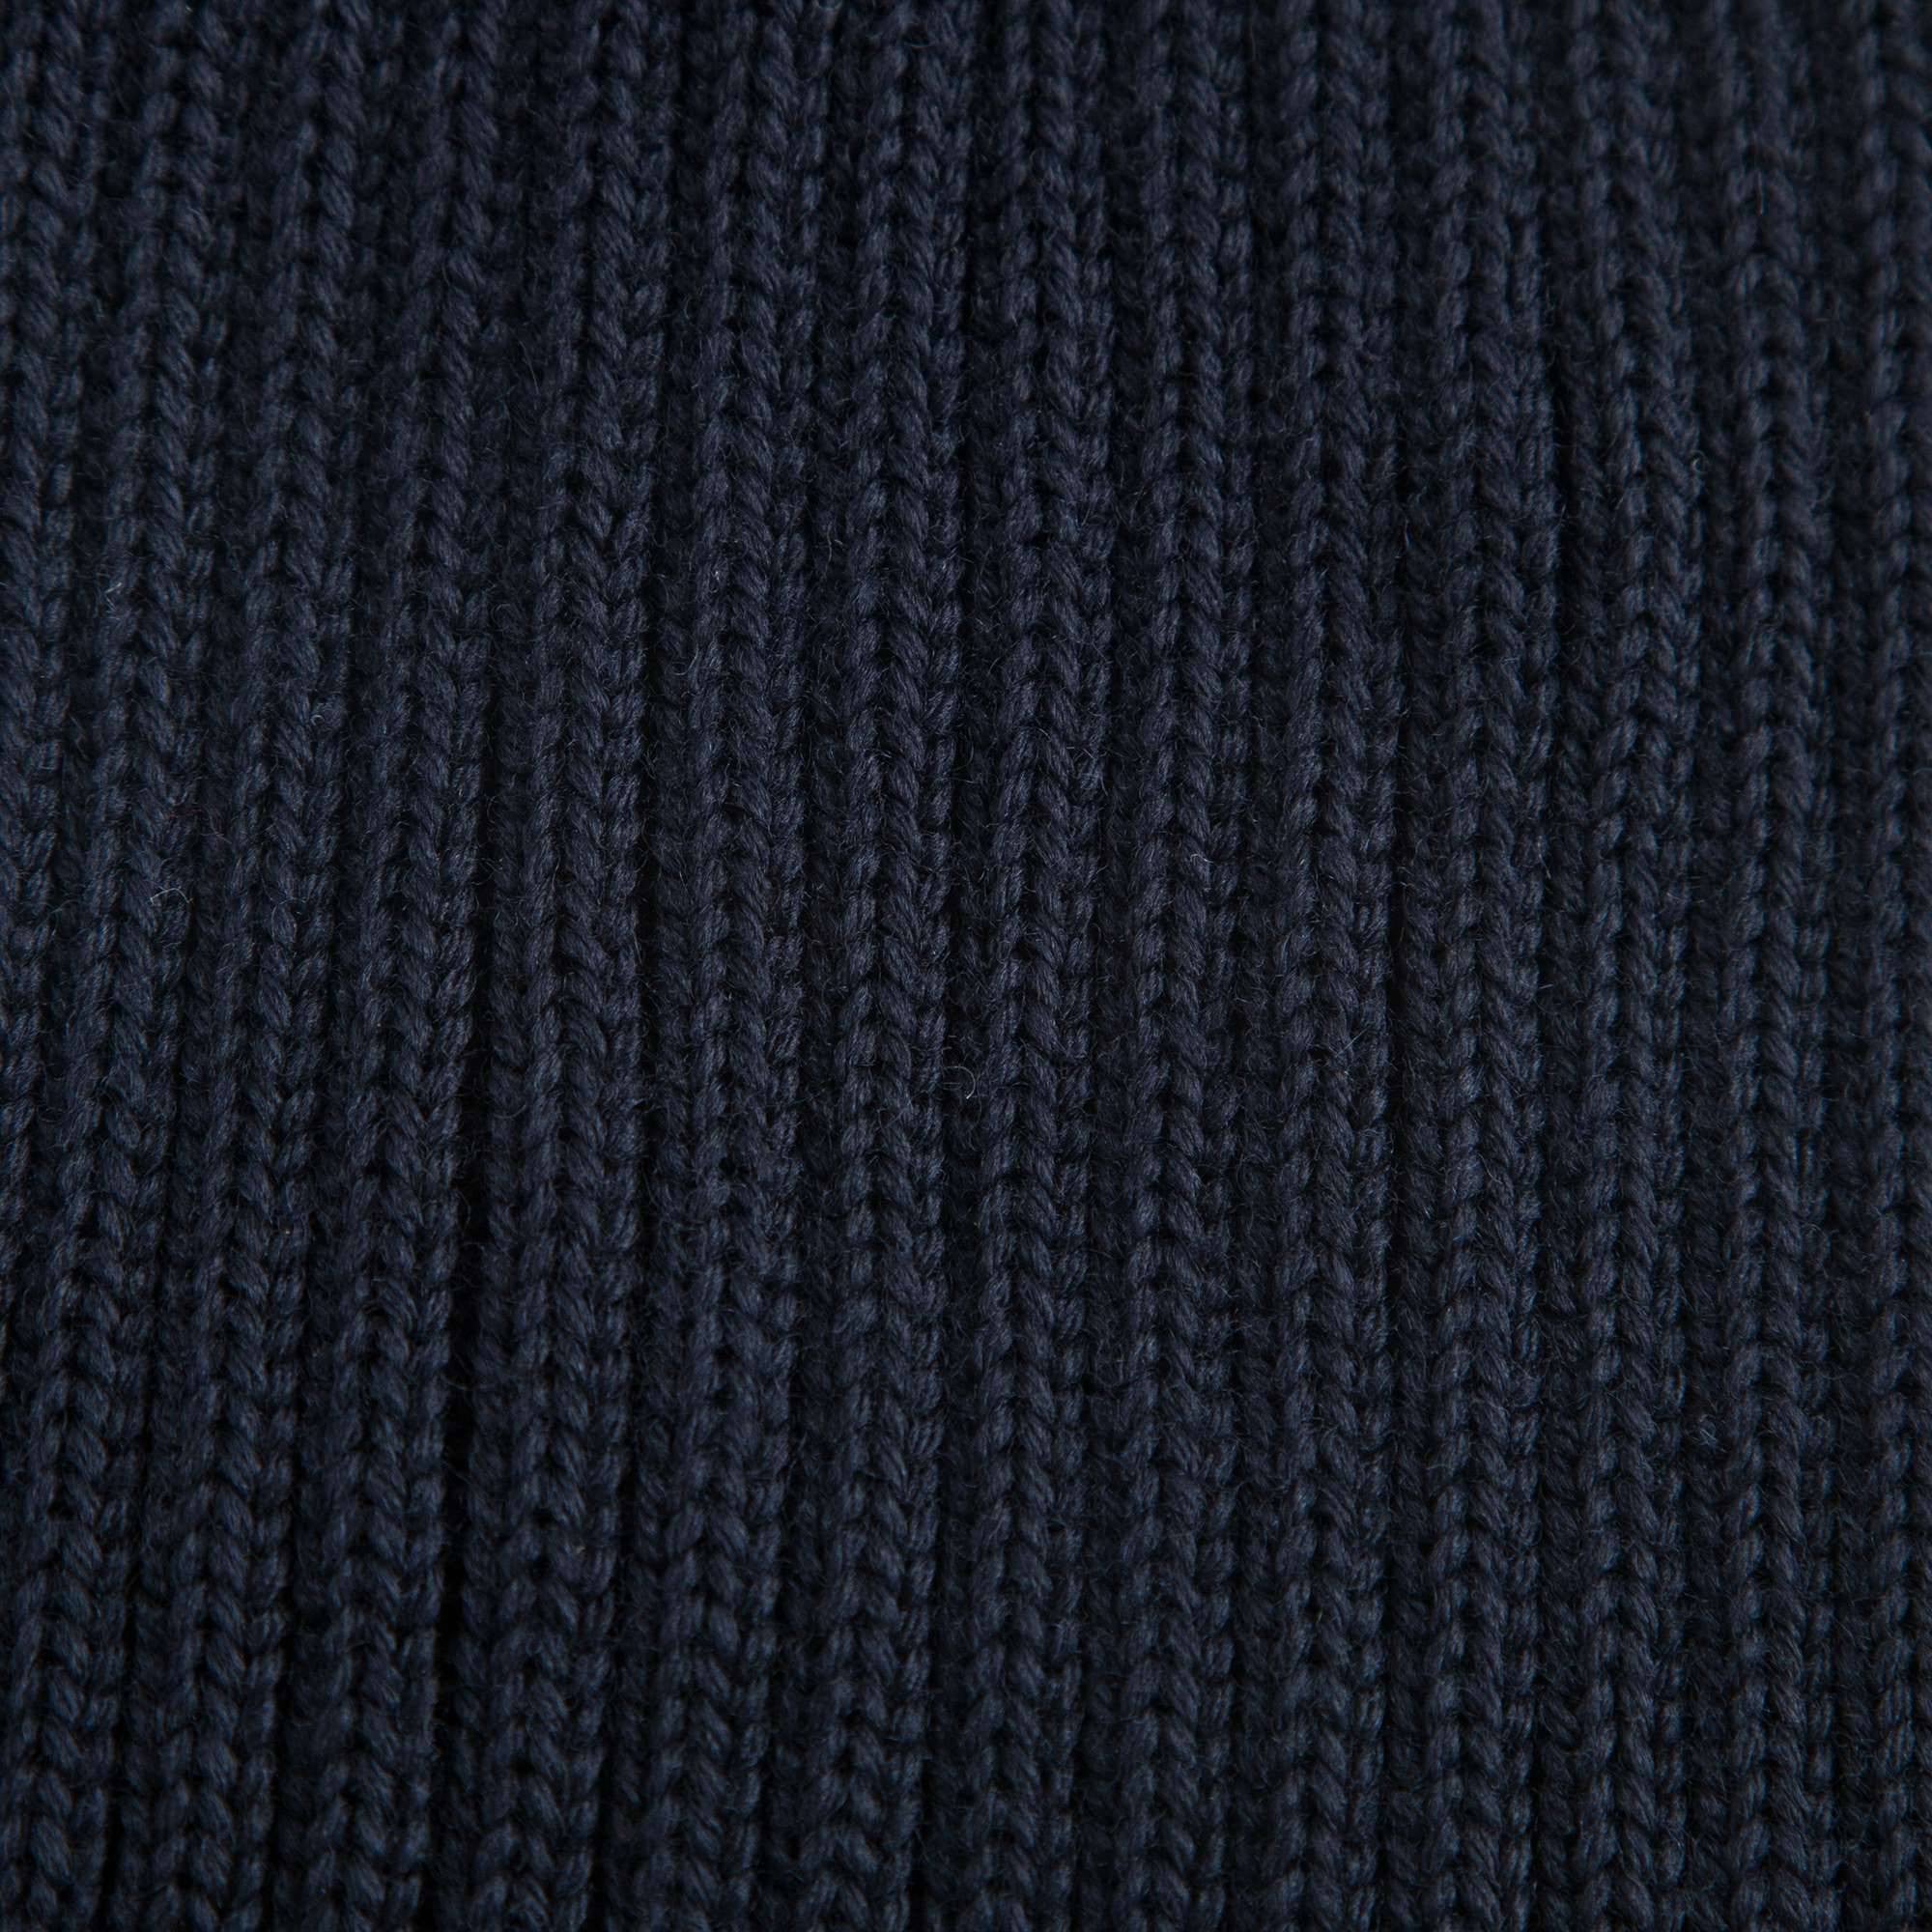 Boys & Girls Navy Blue Knitted Hat With Fur Pom-Pom Trim